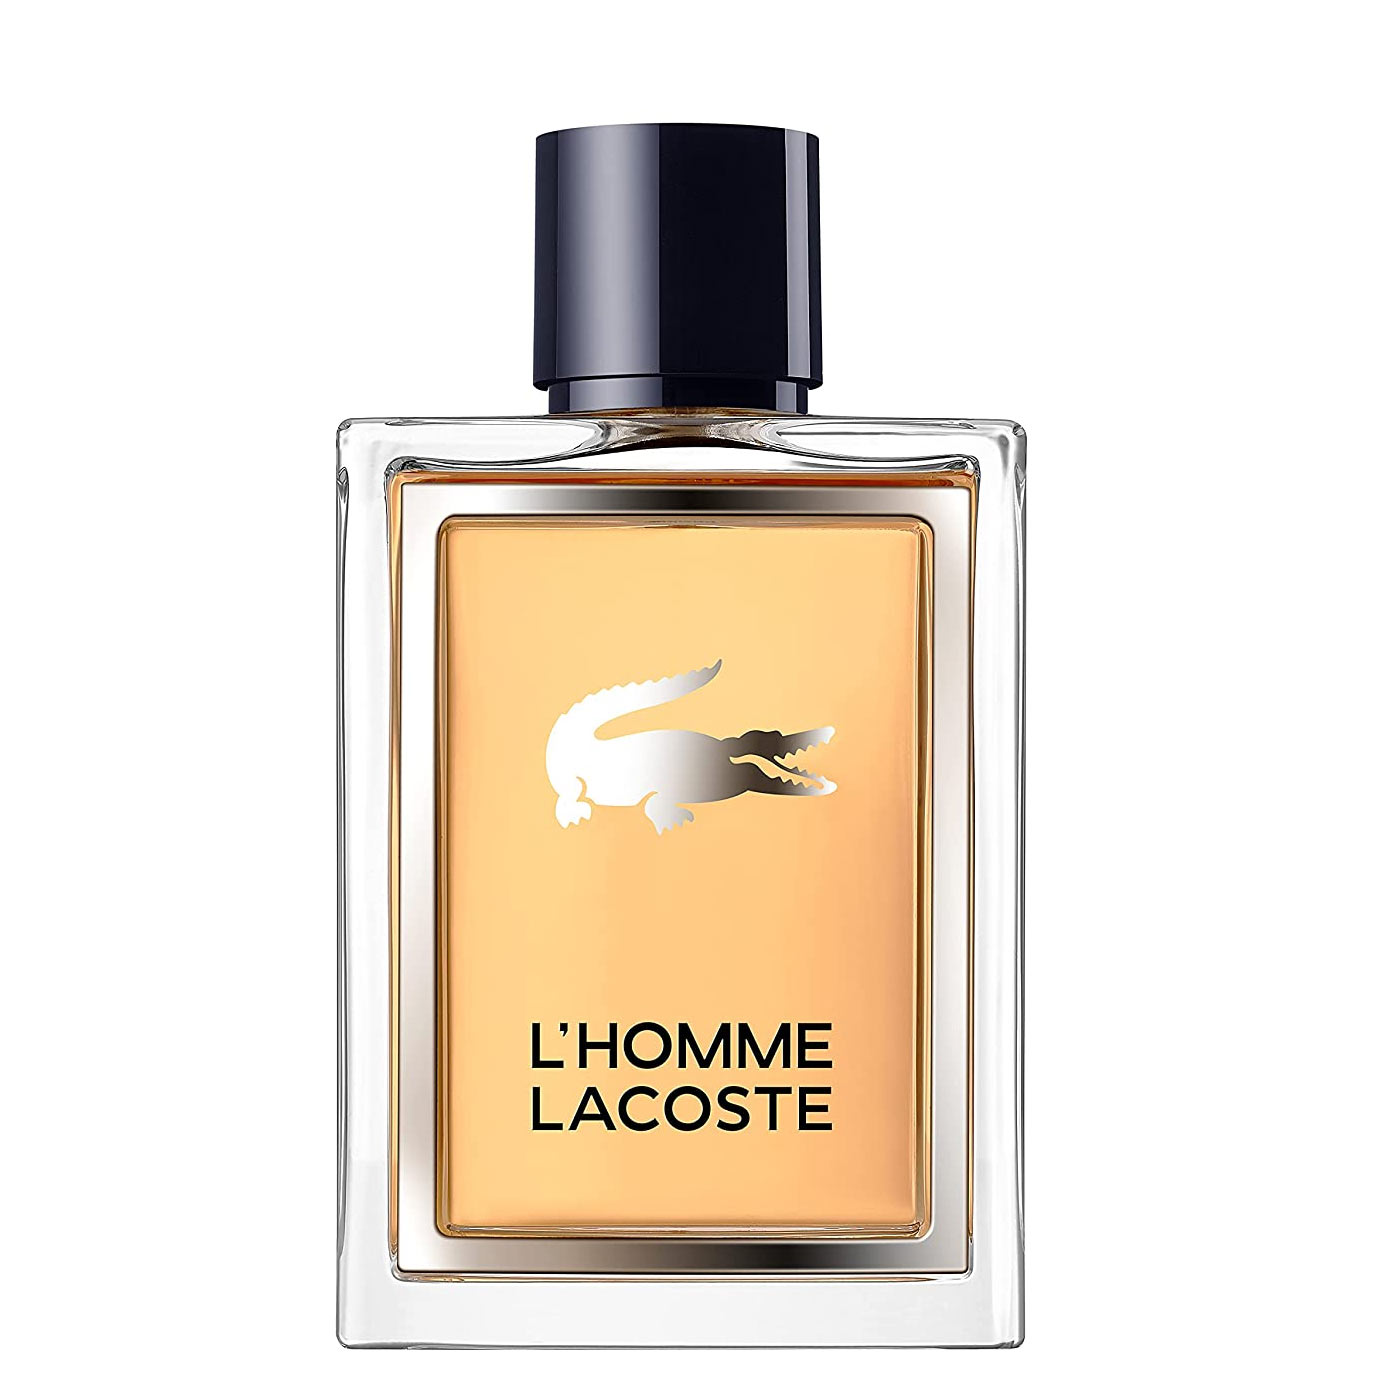  Feraud Homme by Louis Feraud for Men. Eau De Toilette Spray  4.2-Ounce : Cologne : Beauty & Personal Care